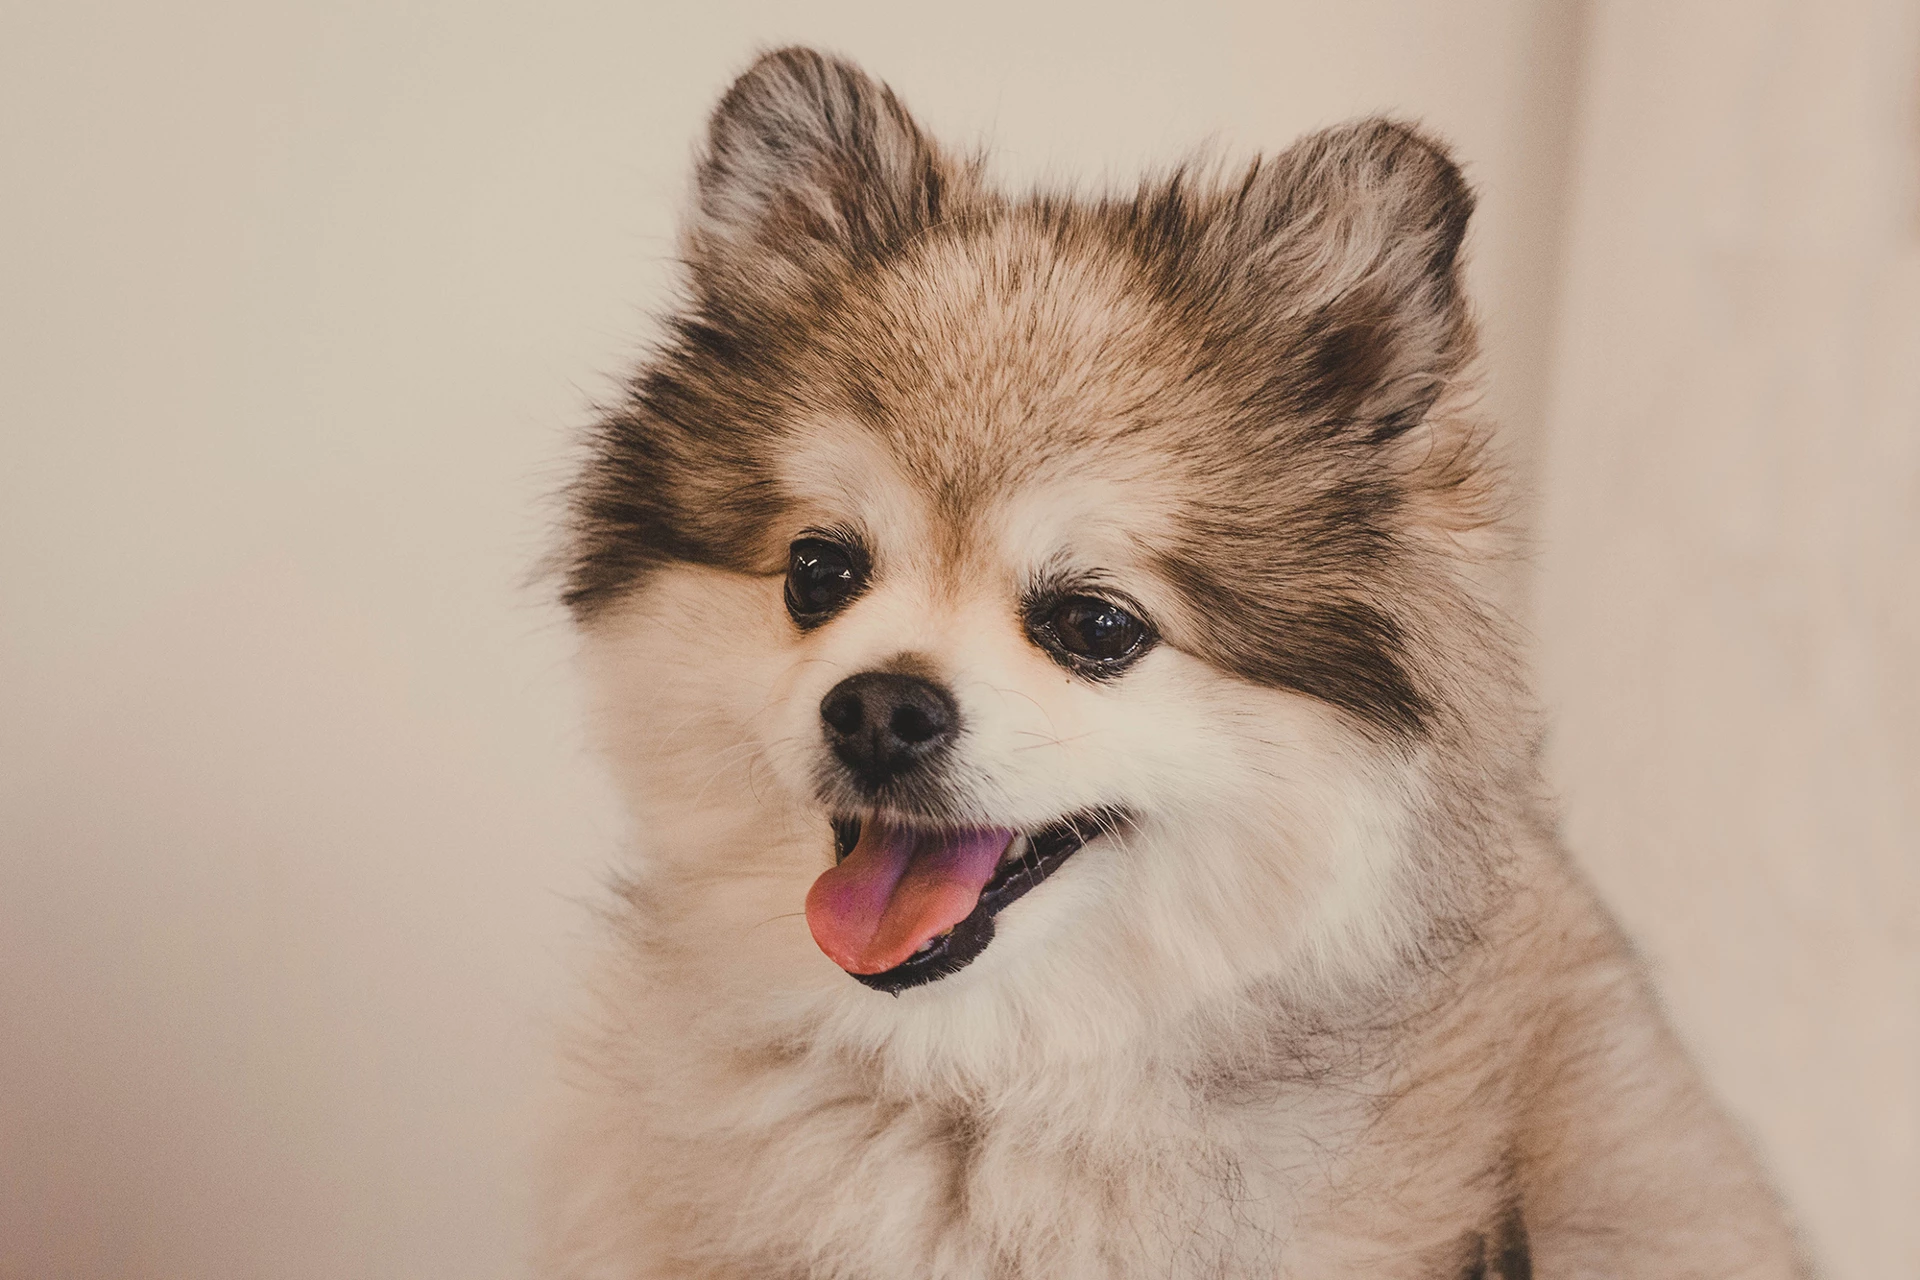 Hình nền cún con dễ thương làm hình nền máy tính bst 100 hình ảnh chó con  đẹp nhất hiện nay